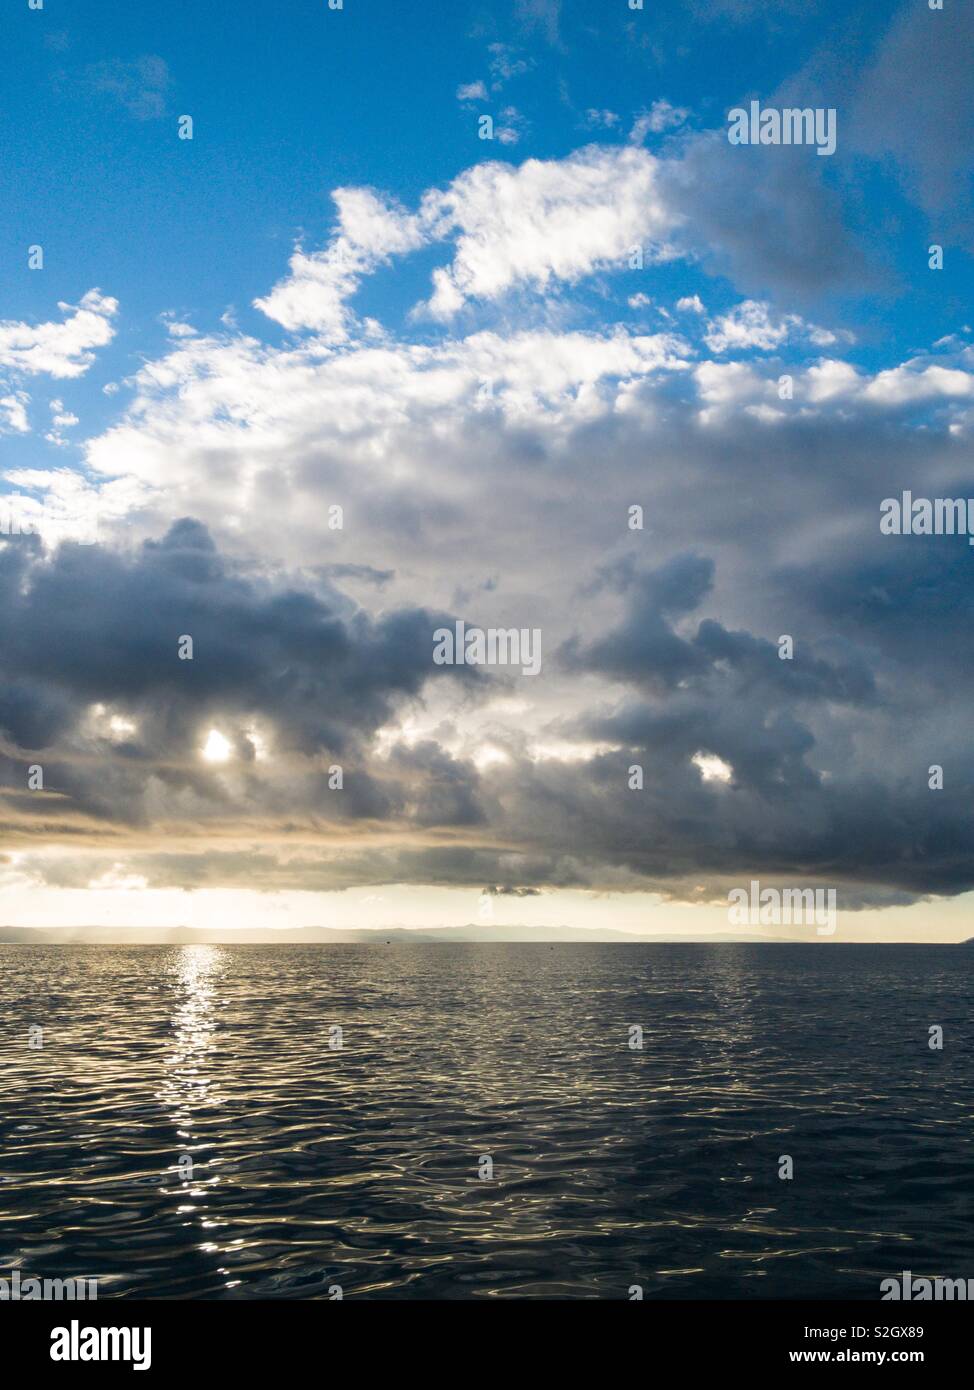 La lumière du soleil à travers les nuages sur la mer Adriatique calme Banque D'Images